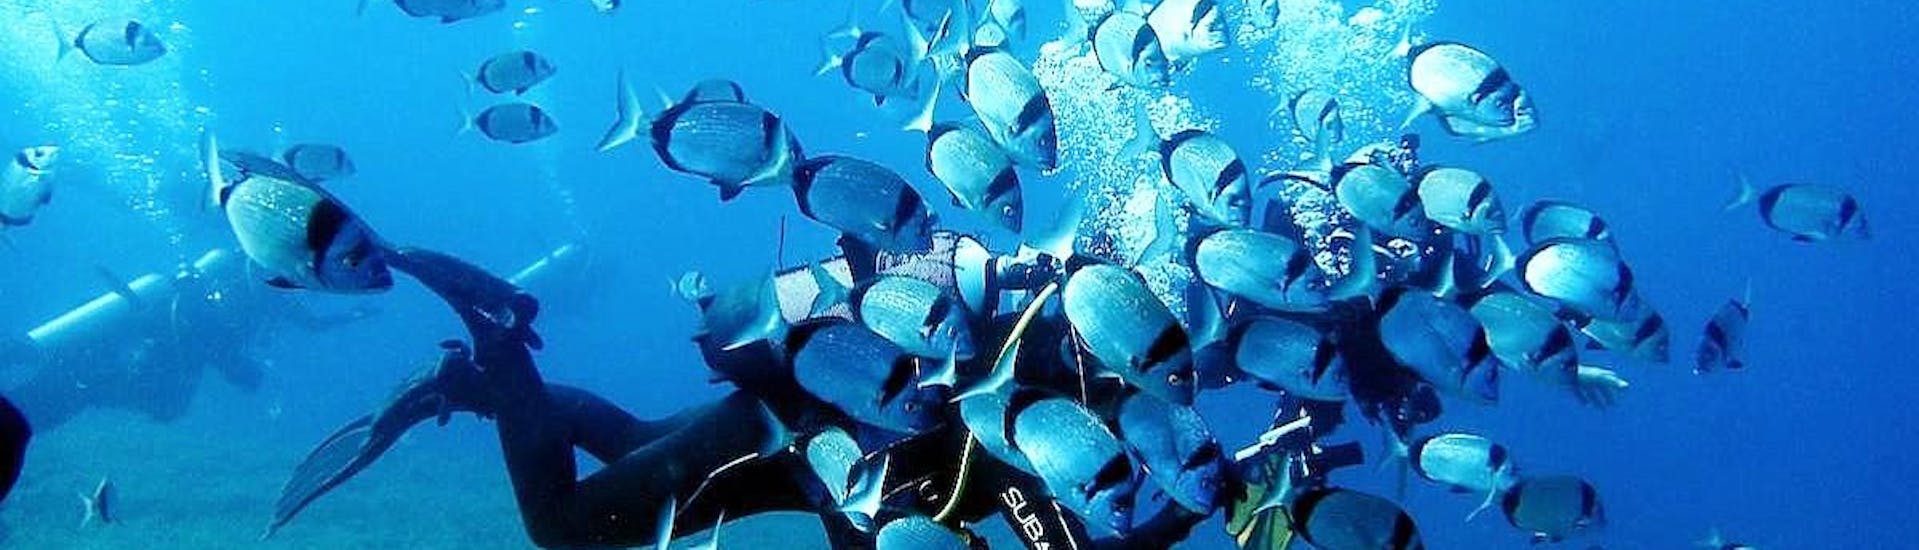 Een duiker omringd door een school vissen tijdens een duik met Cyprus Diving Adventure.